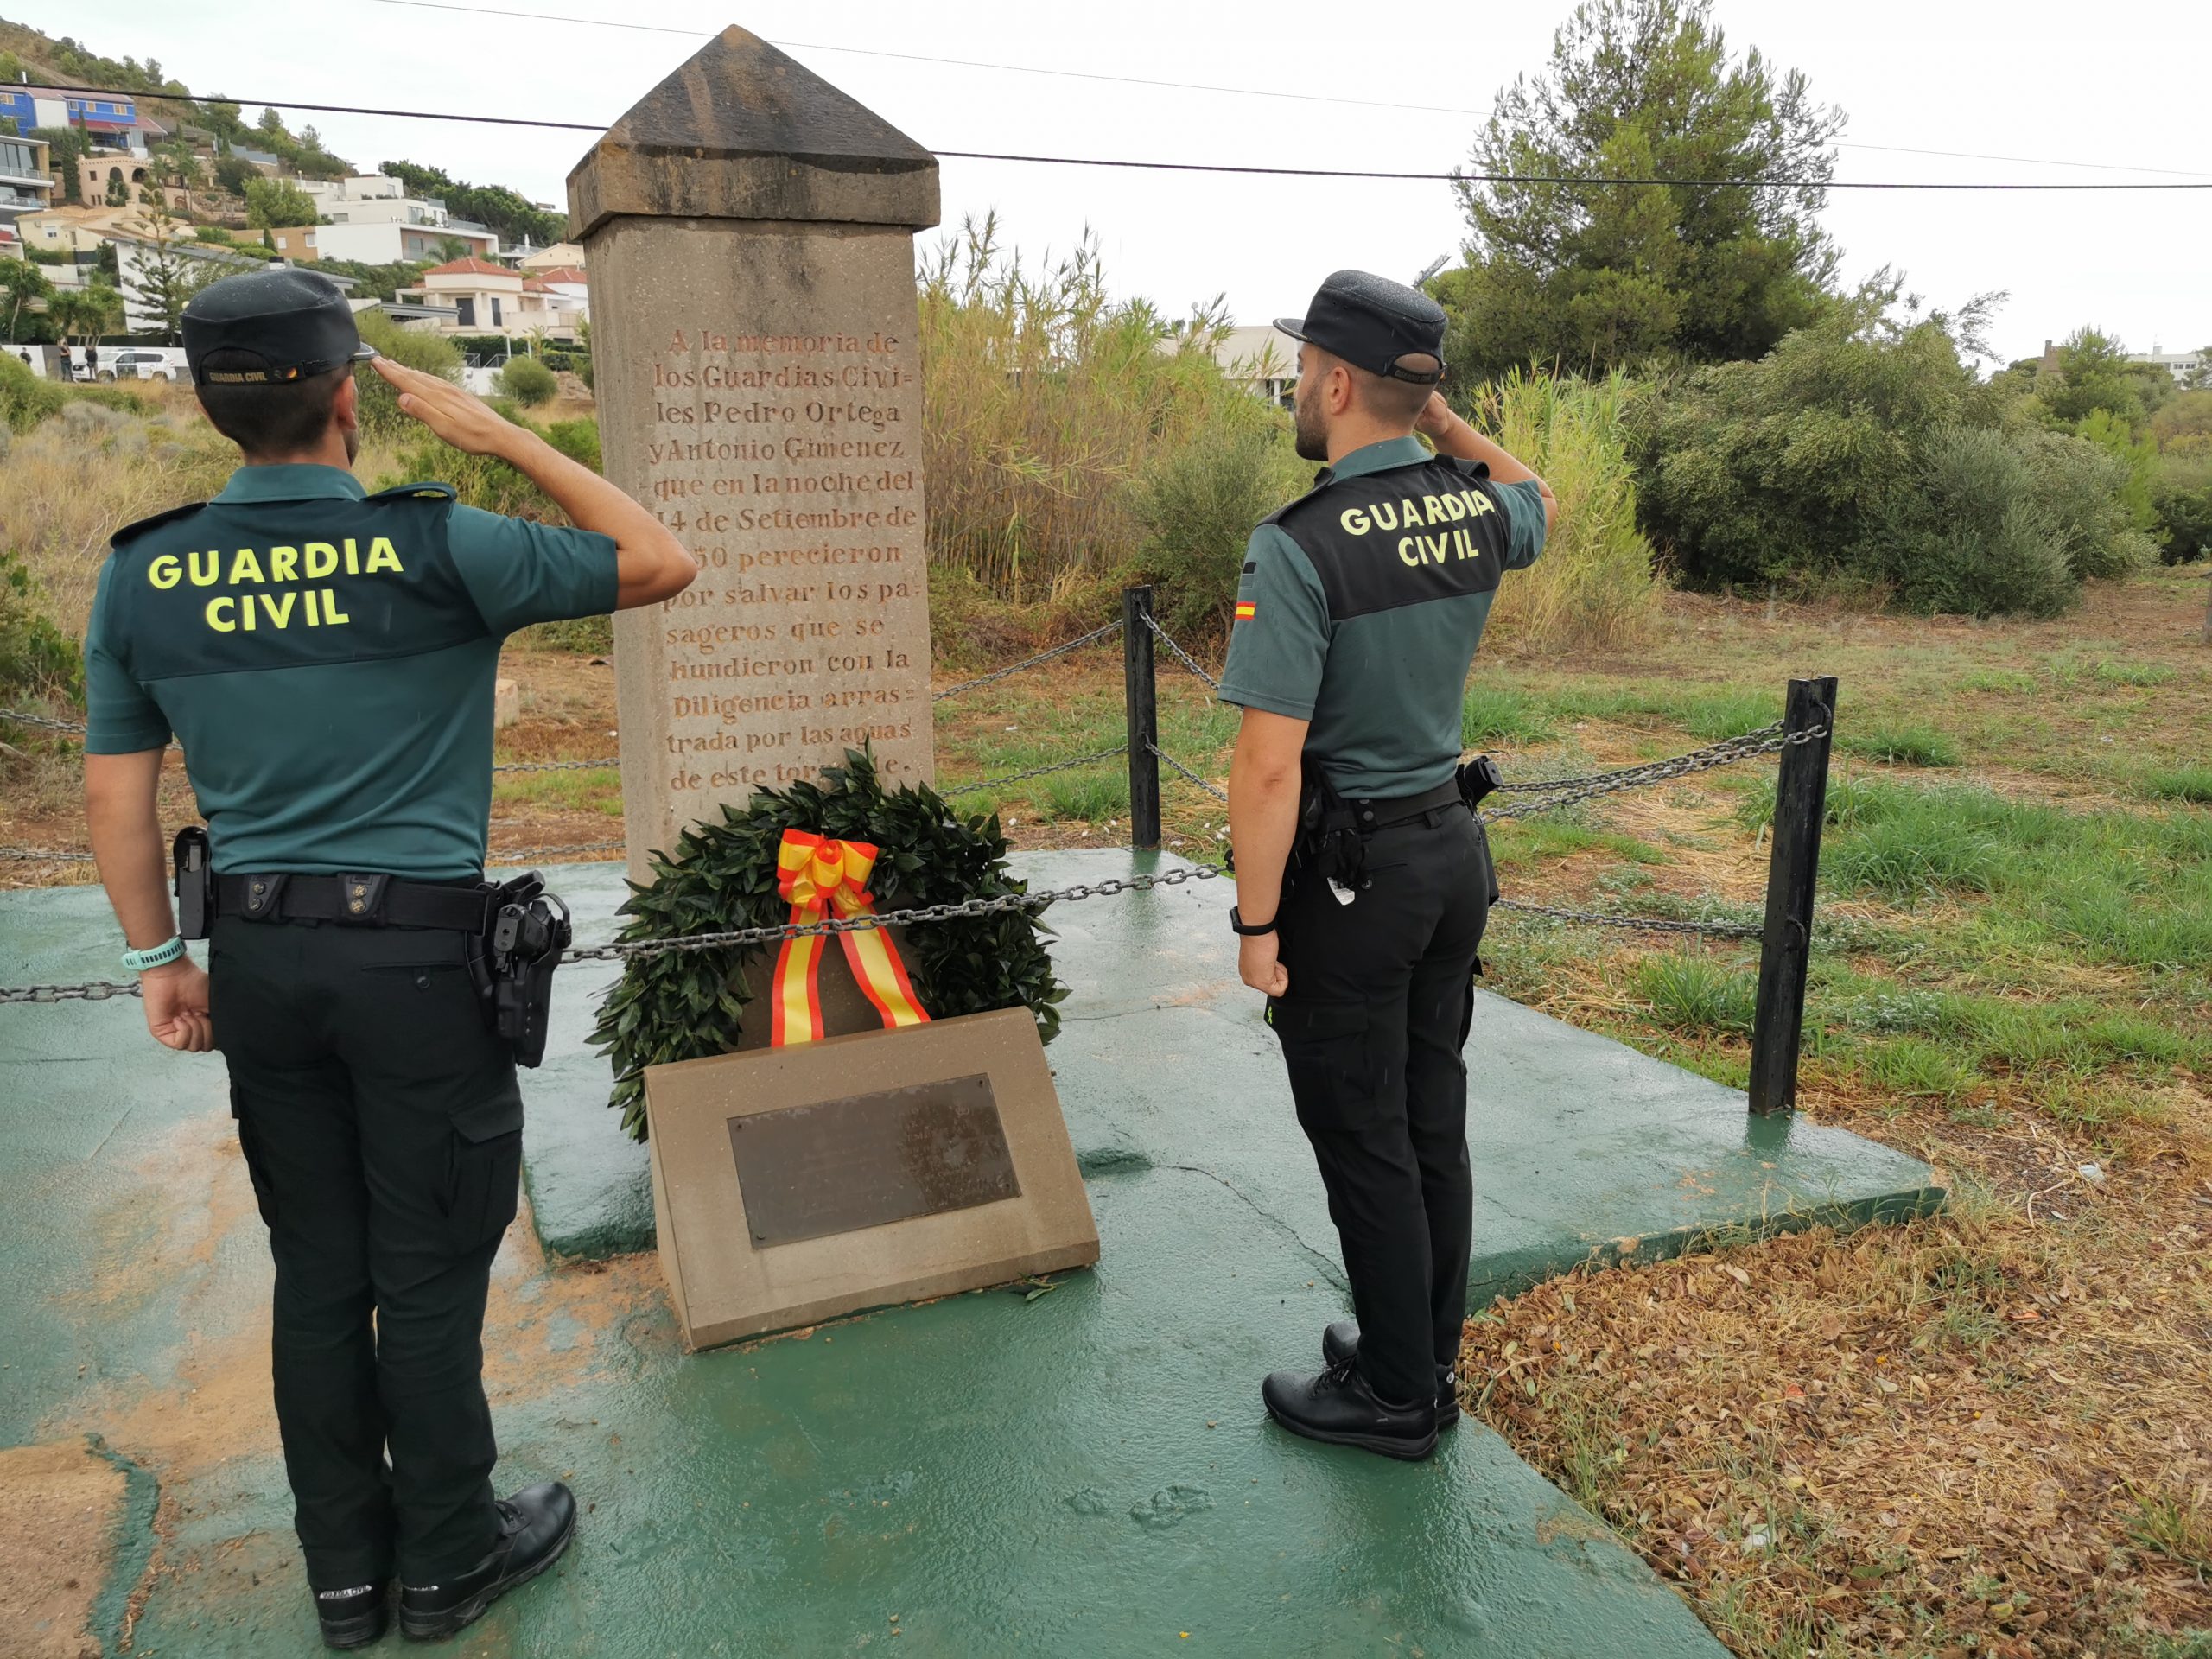 Homenatge de la Guàrdia Civil a Pedro Ortega i Antonio Giménez, agents que van morir en un rescat per riuades a Orpesa en 1850